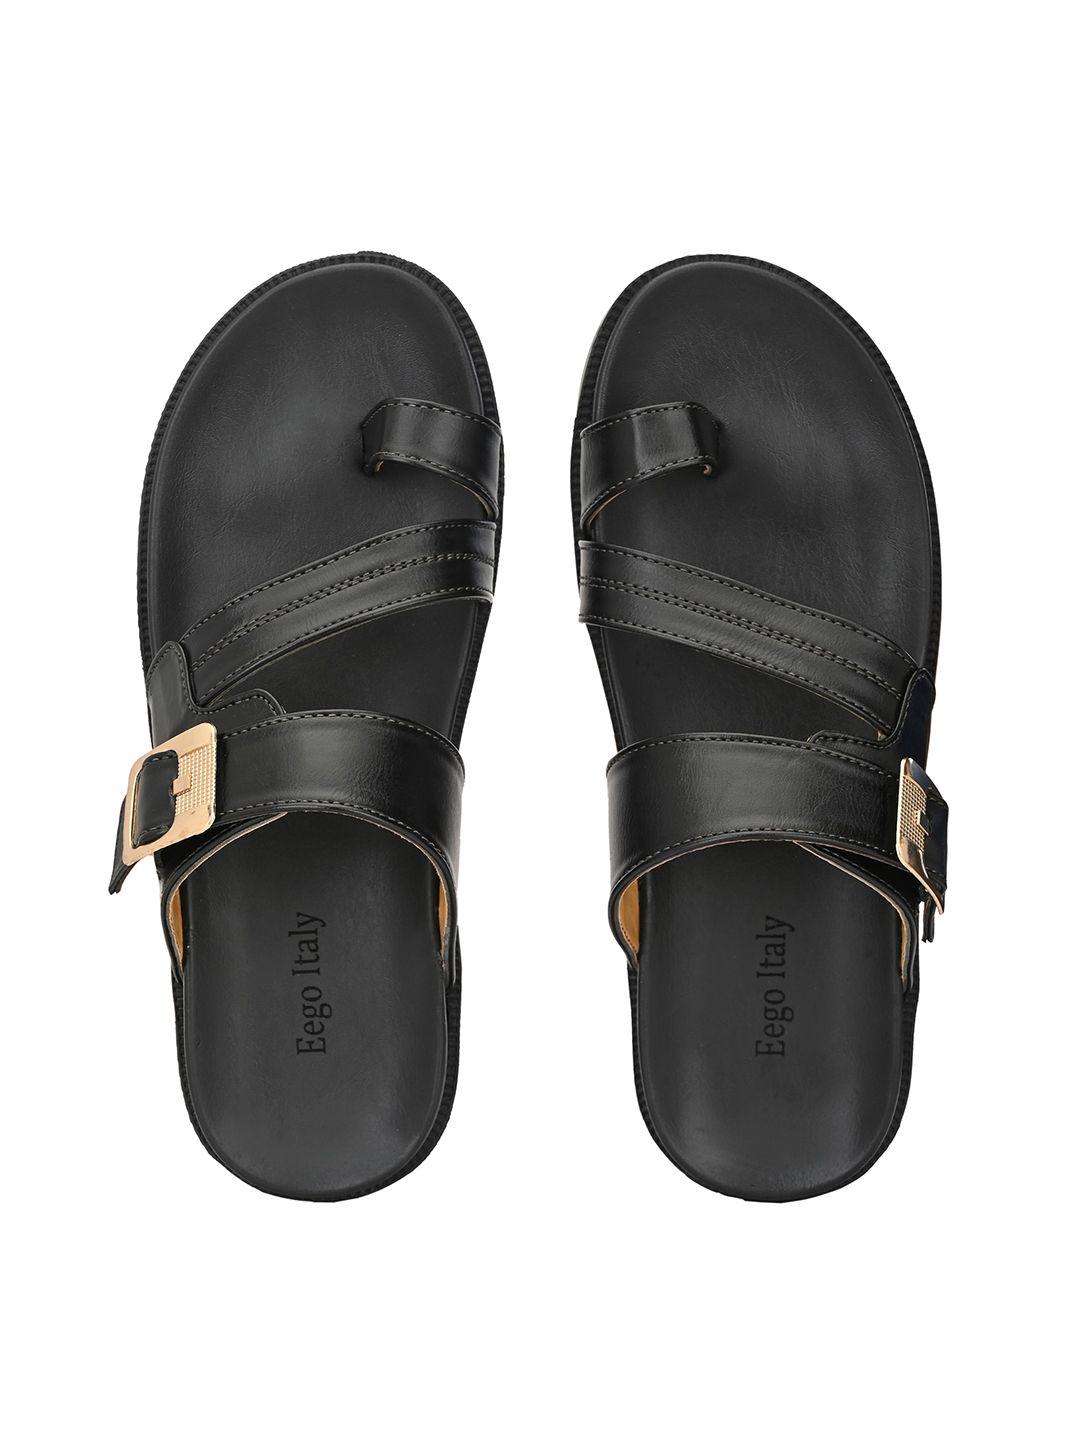 Eego Italy Men Comfort Sandals